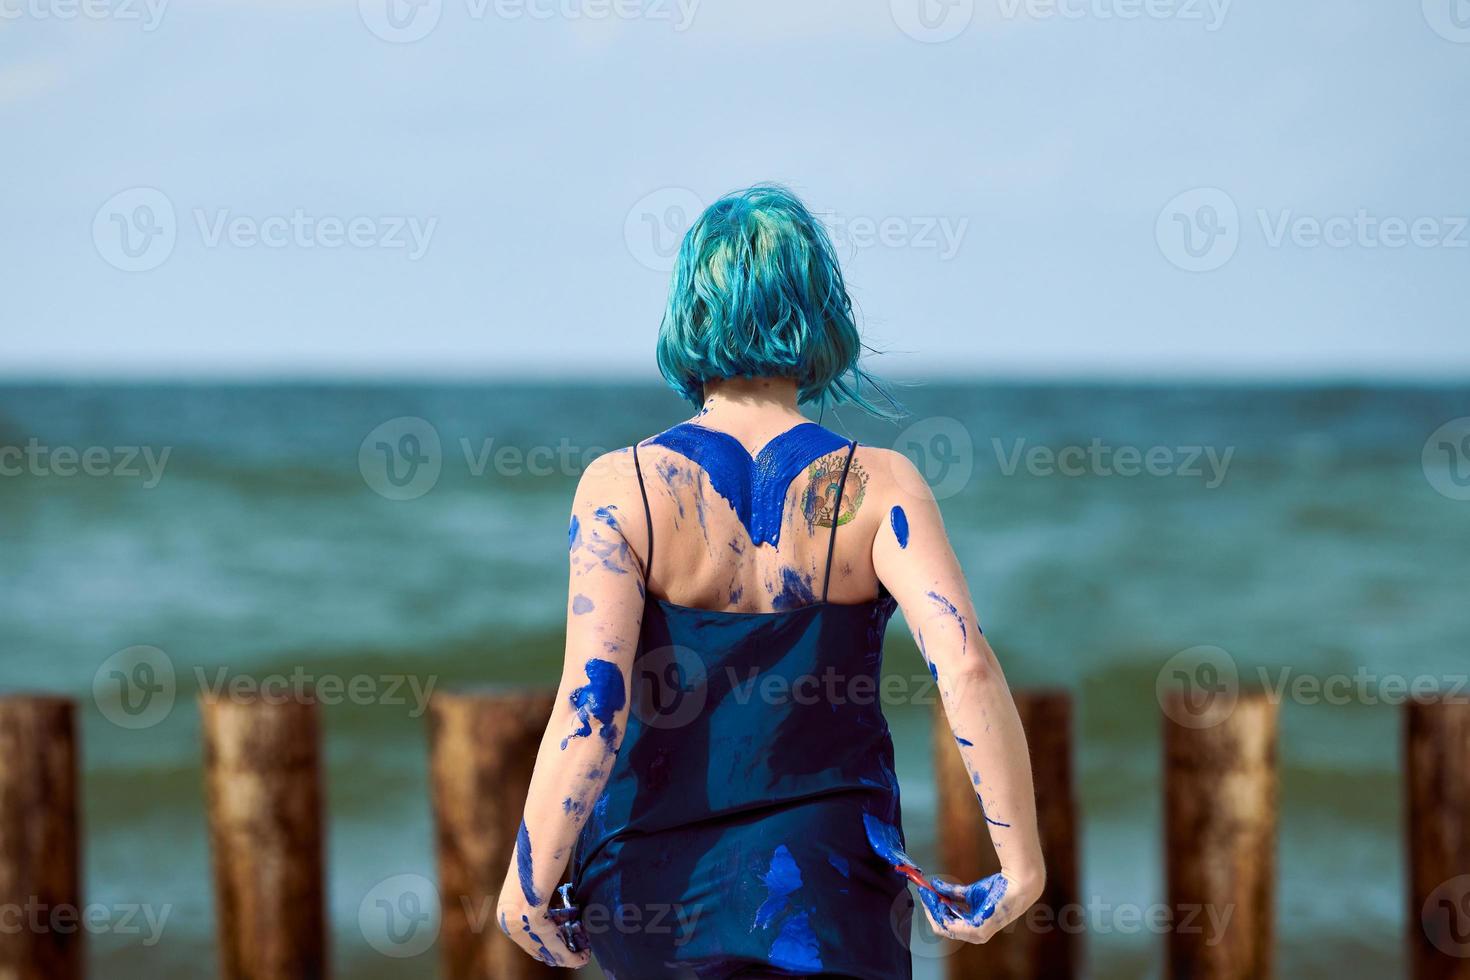 artista artística de cabello azul con vestido manchado con pinturas de gouache azul en su cuerpo foto